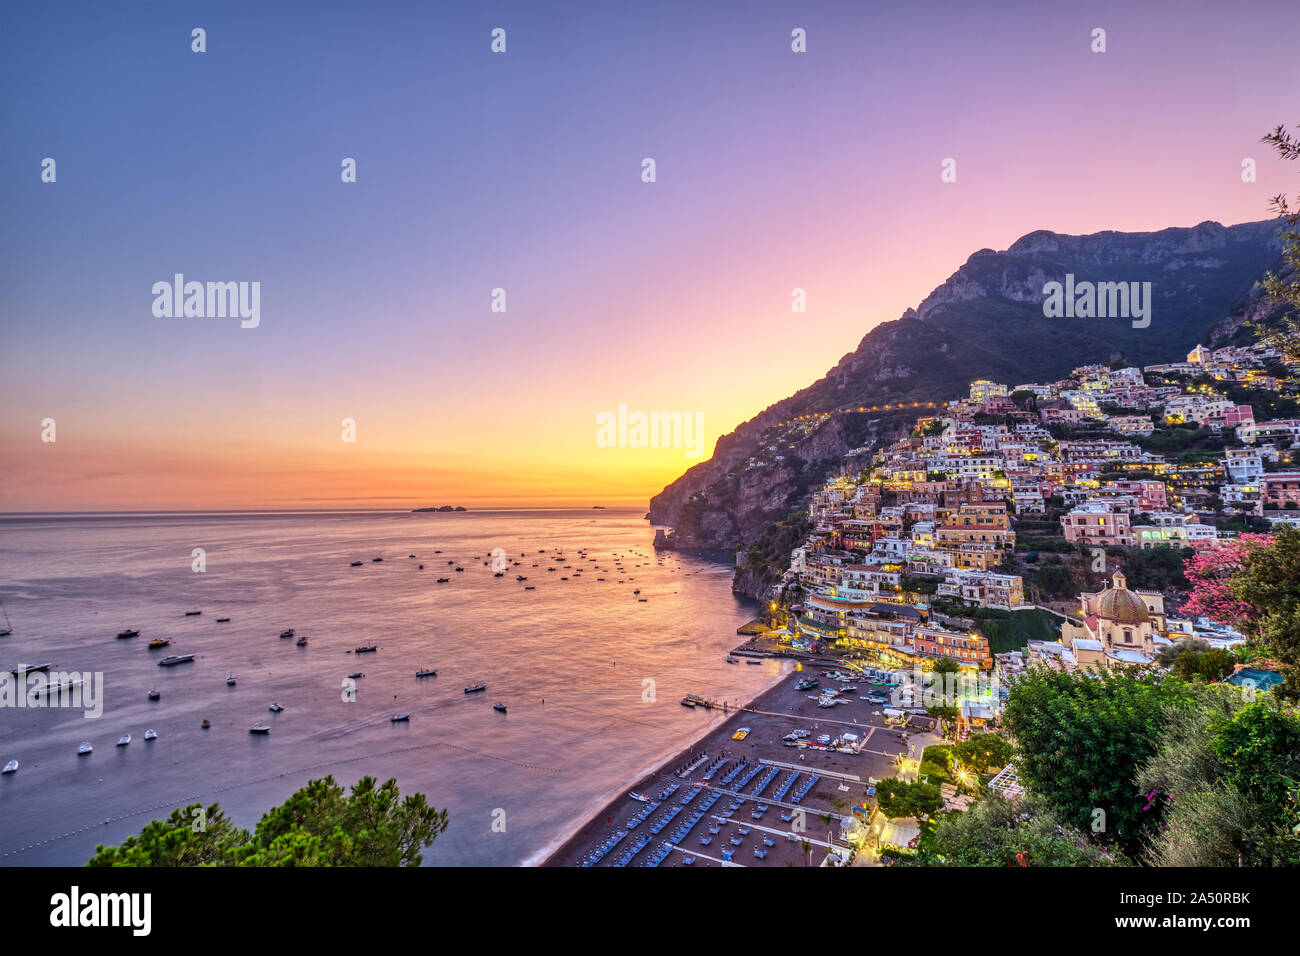 Positano on the italian Amalfi coast after sunset Stock Photo